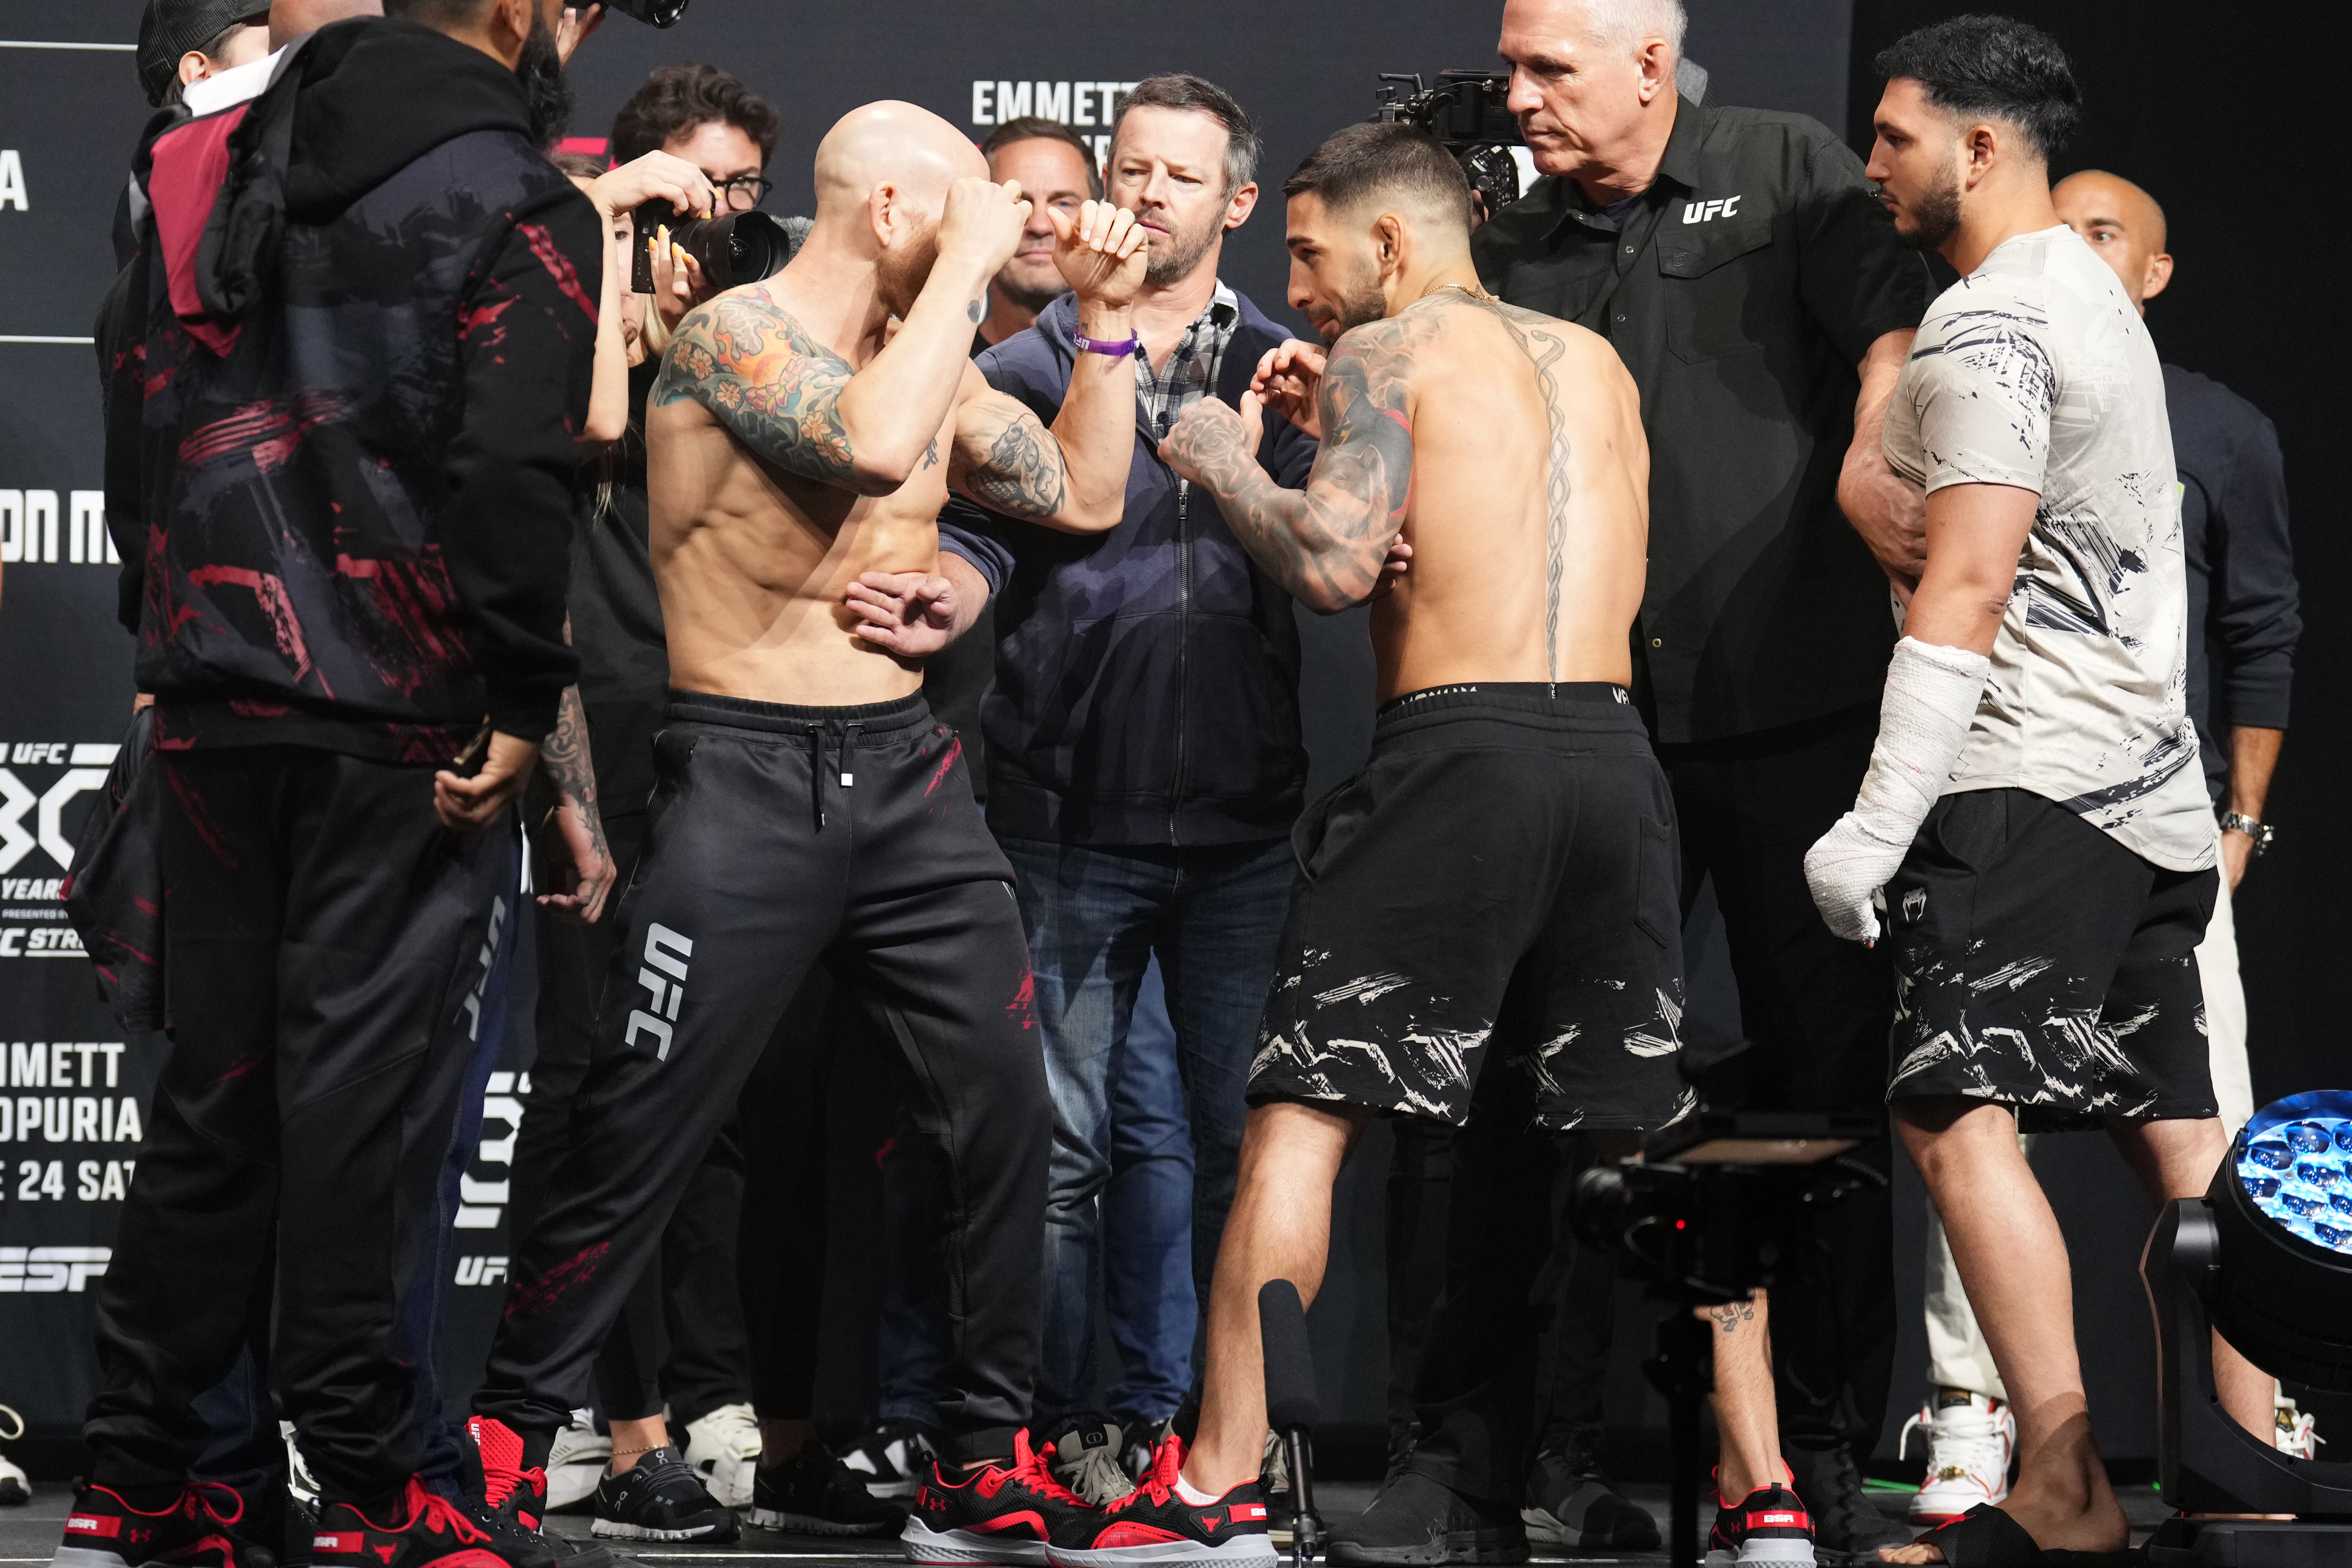 UFC Fight Night: Emmett v Topuria Ceremonial Weigh-in